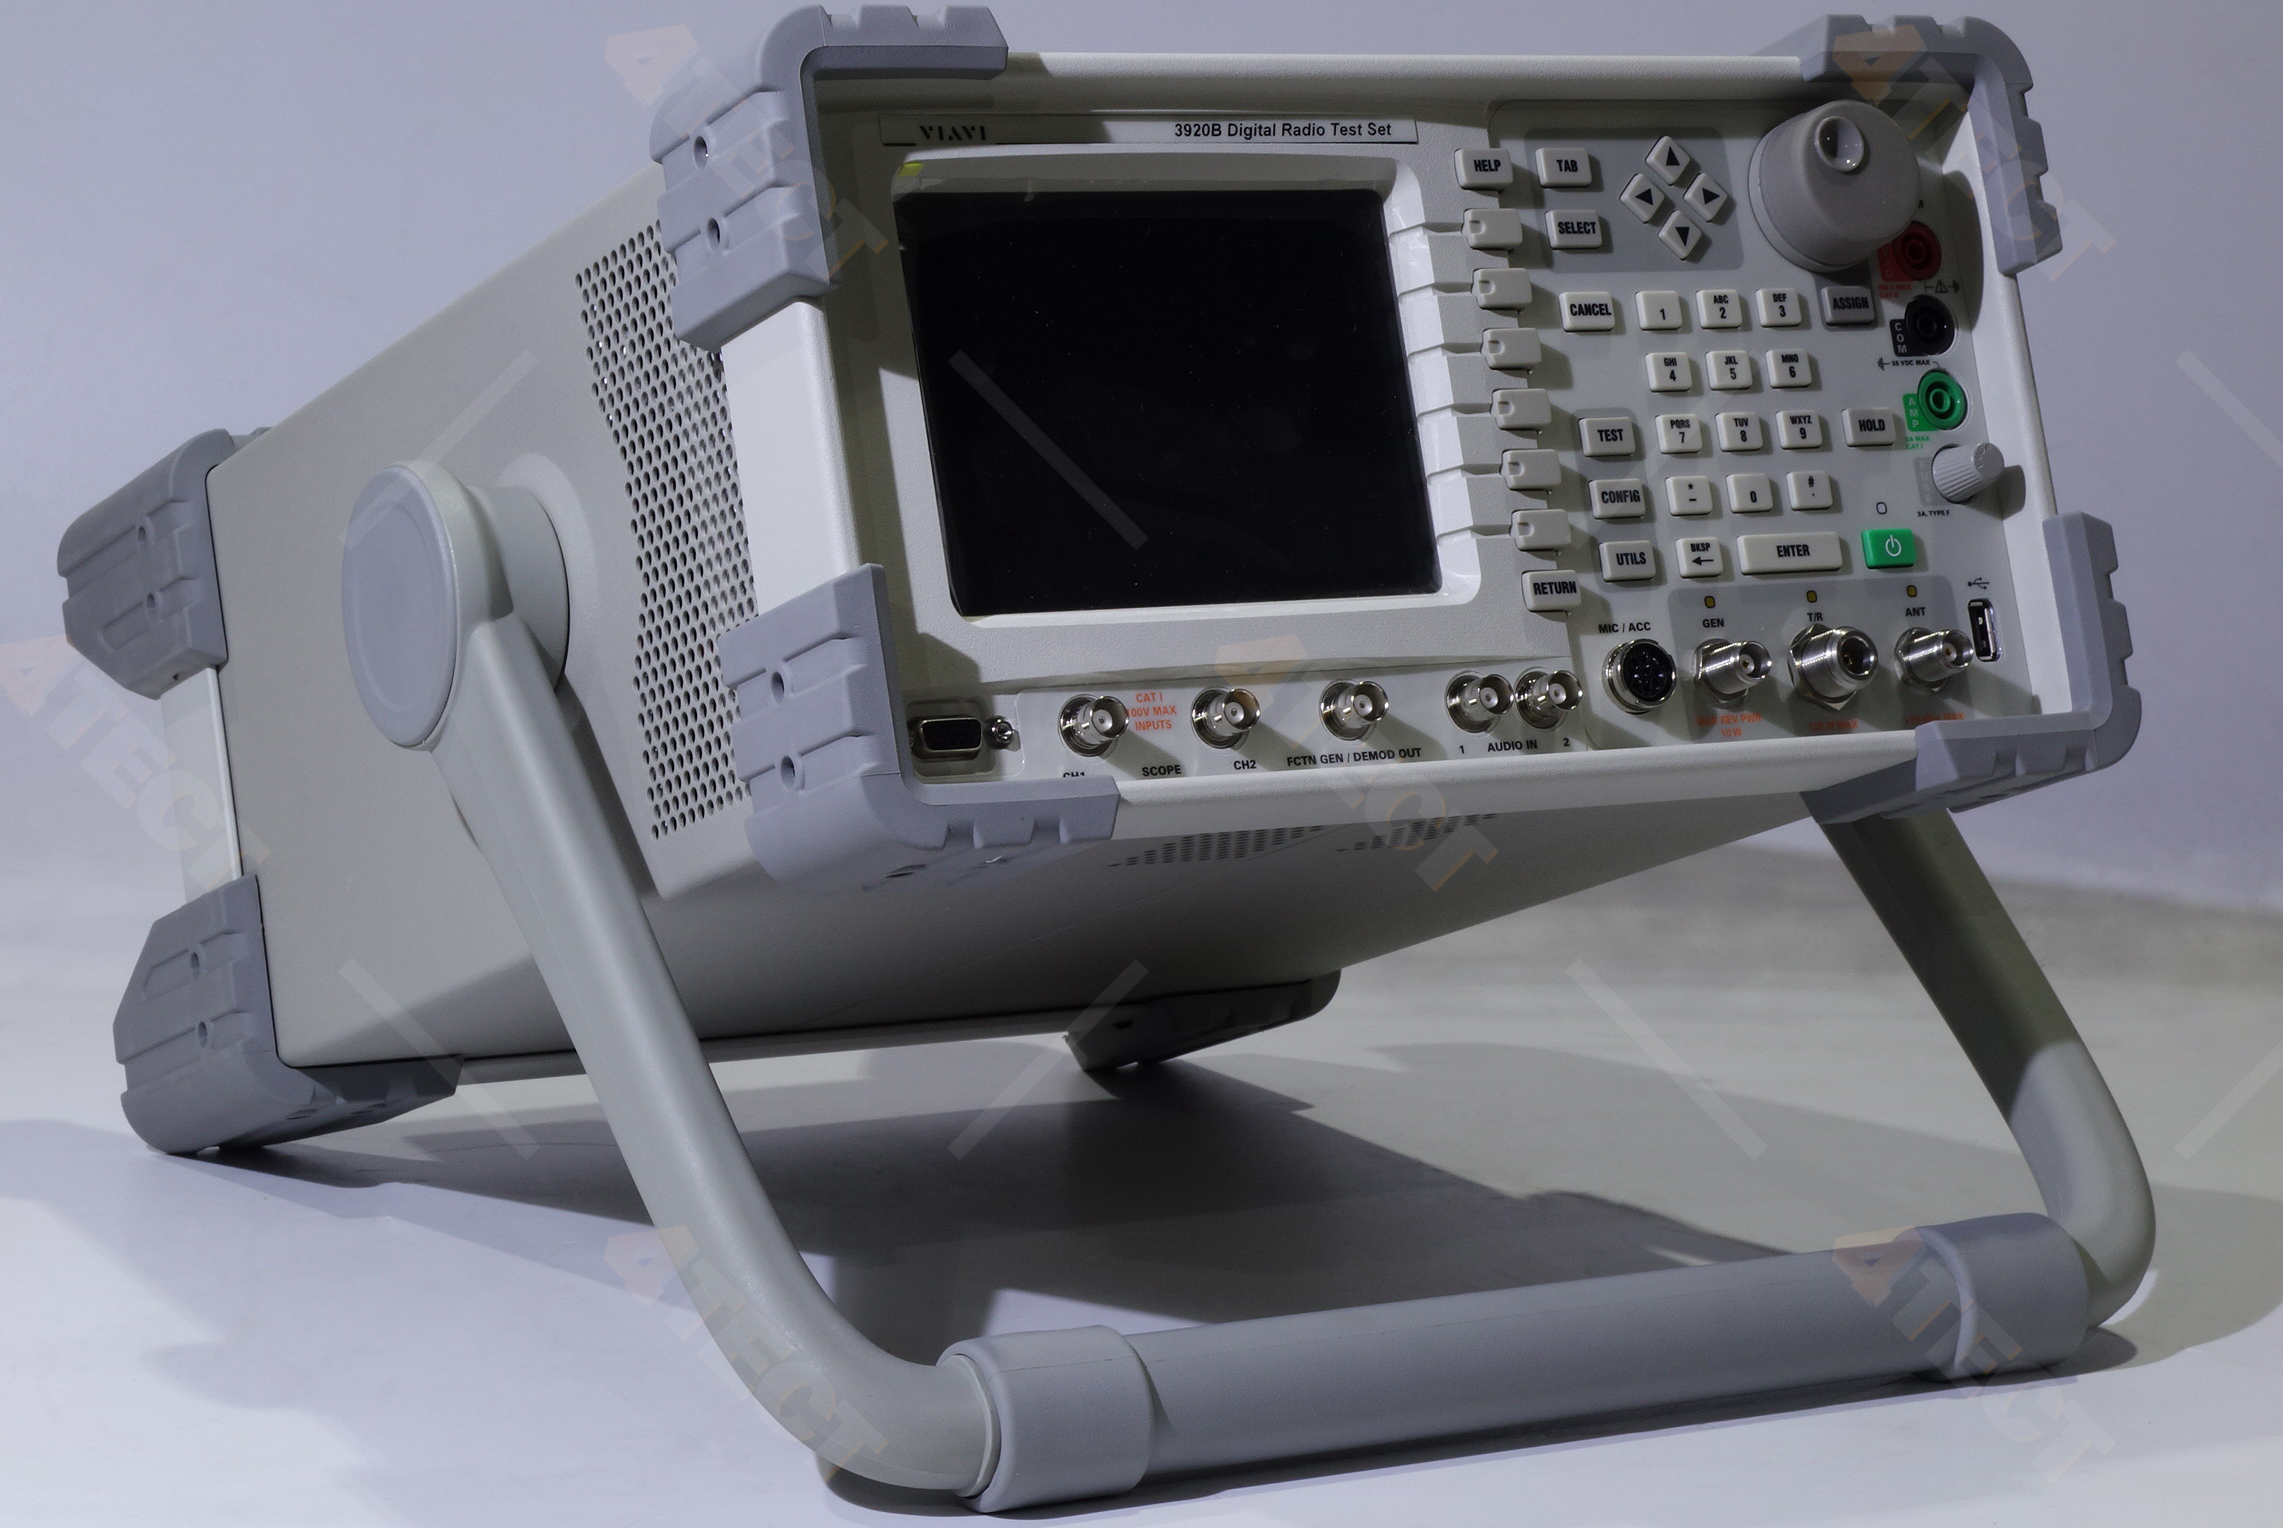 Радиоизмерительный комплекс VIAVI (Aeroflex) 3920B
с диапазоном от 10 МГц до 1,05 ГГц 
(с опцией 390XOPT58 до 2,7 ГГц)